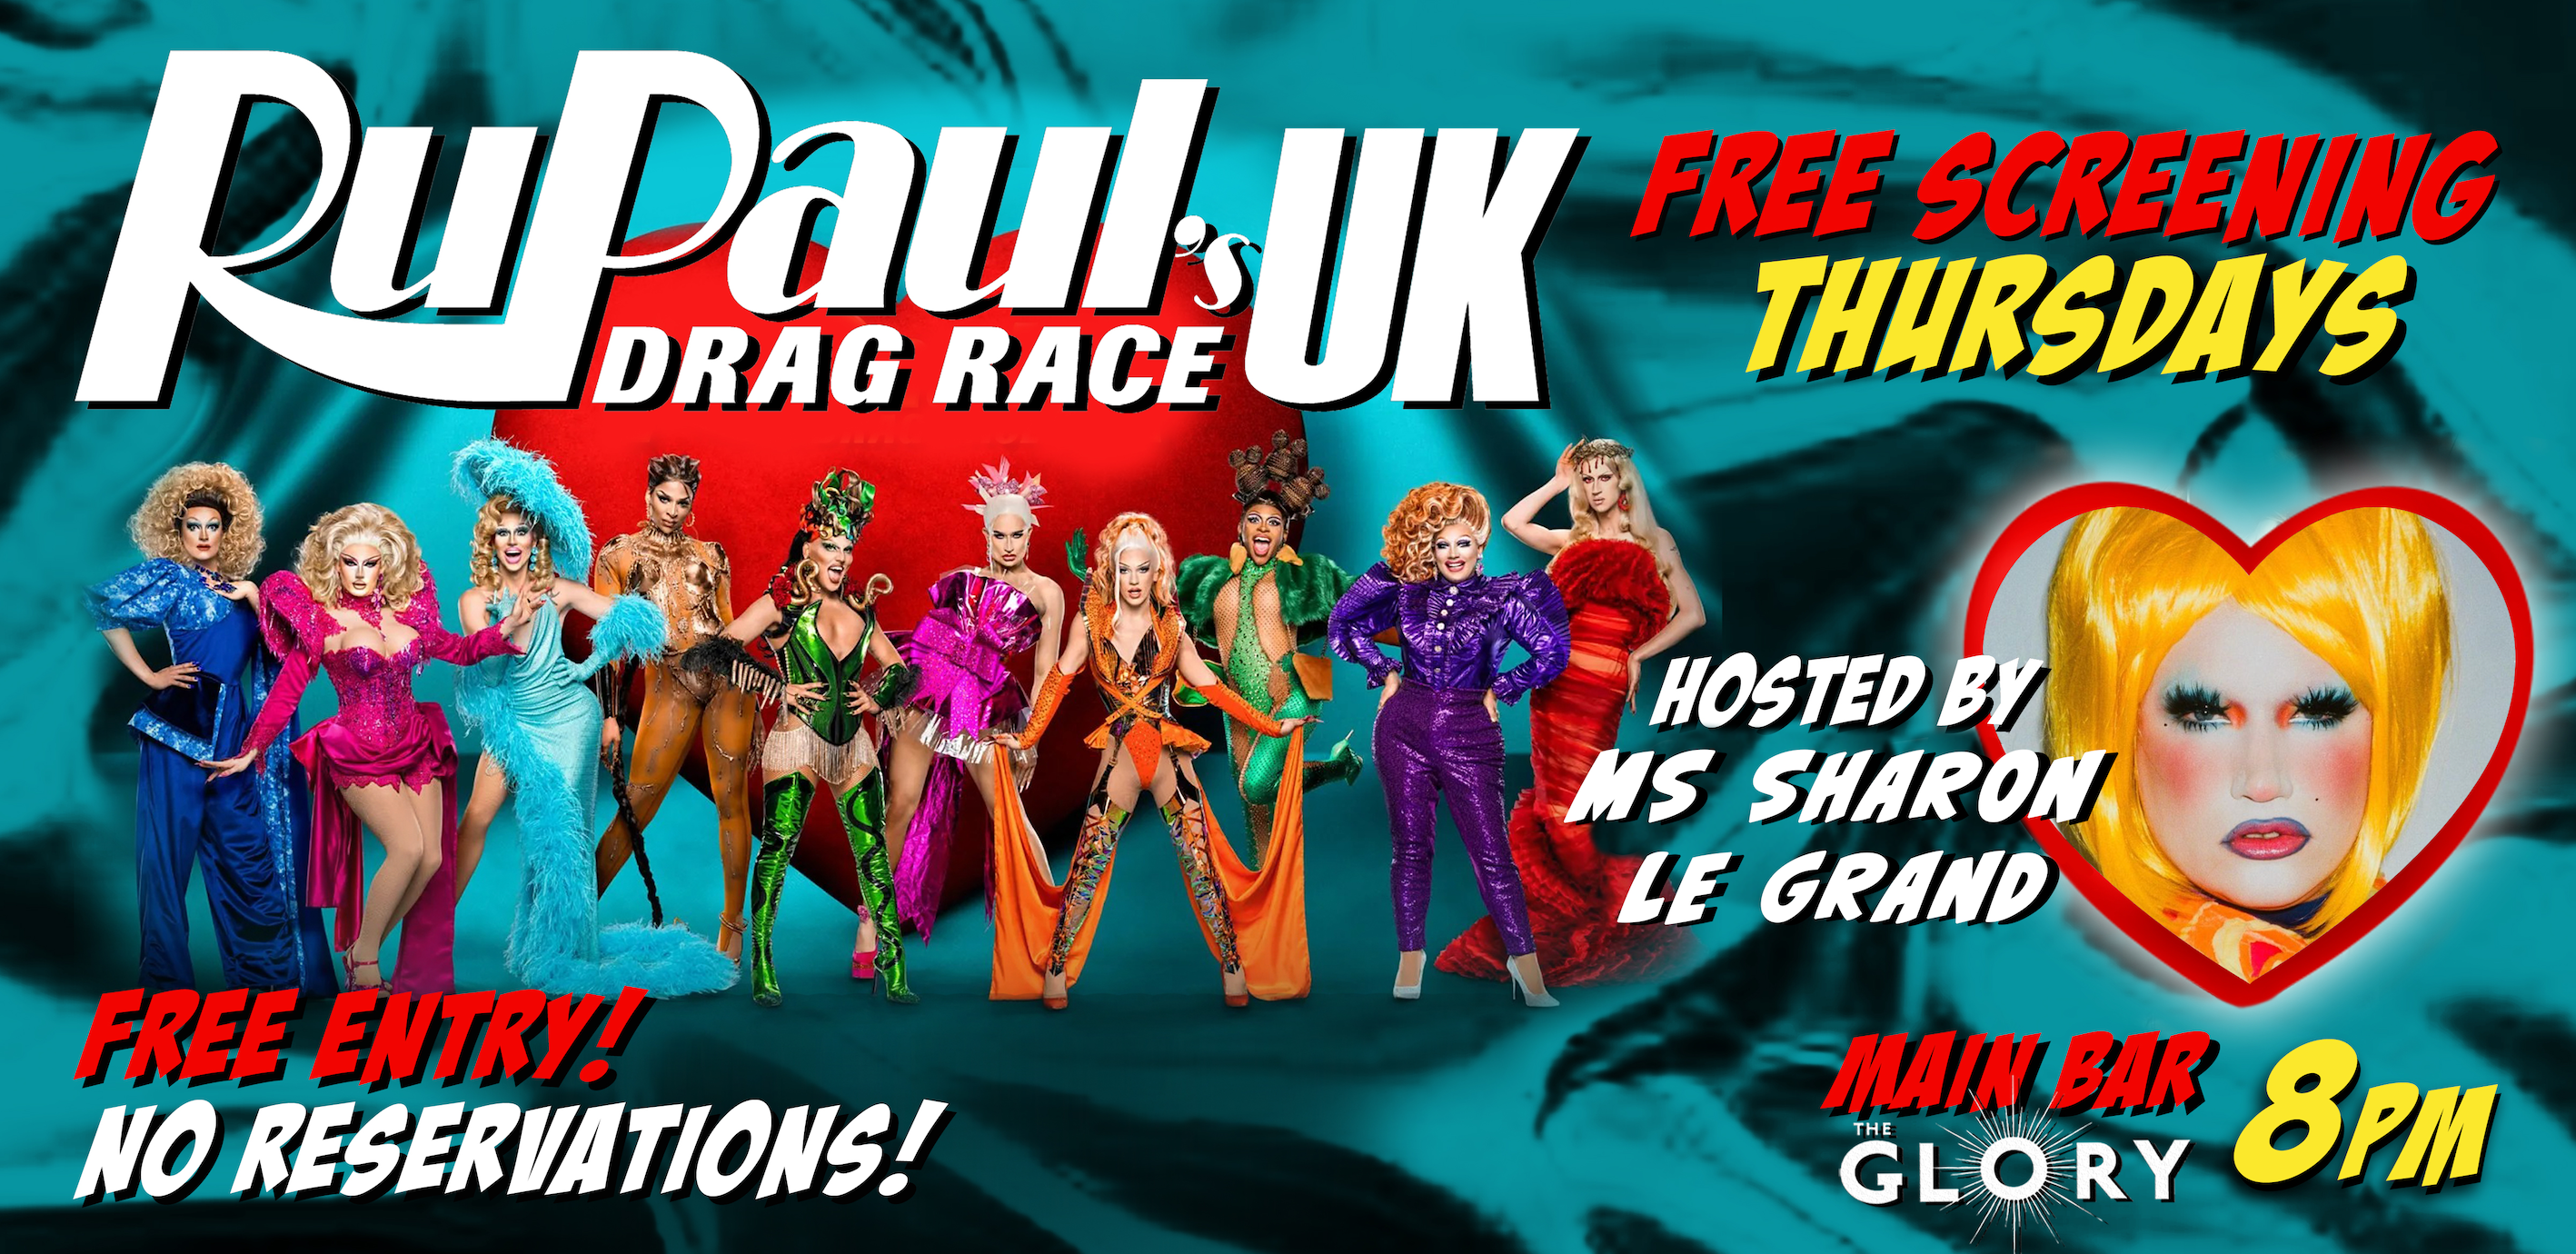 SCREENING: Ru Paul’s Drag Race UK Free Screening